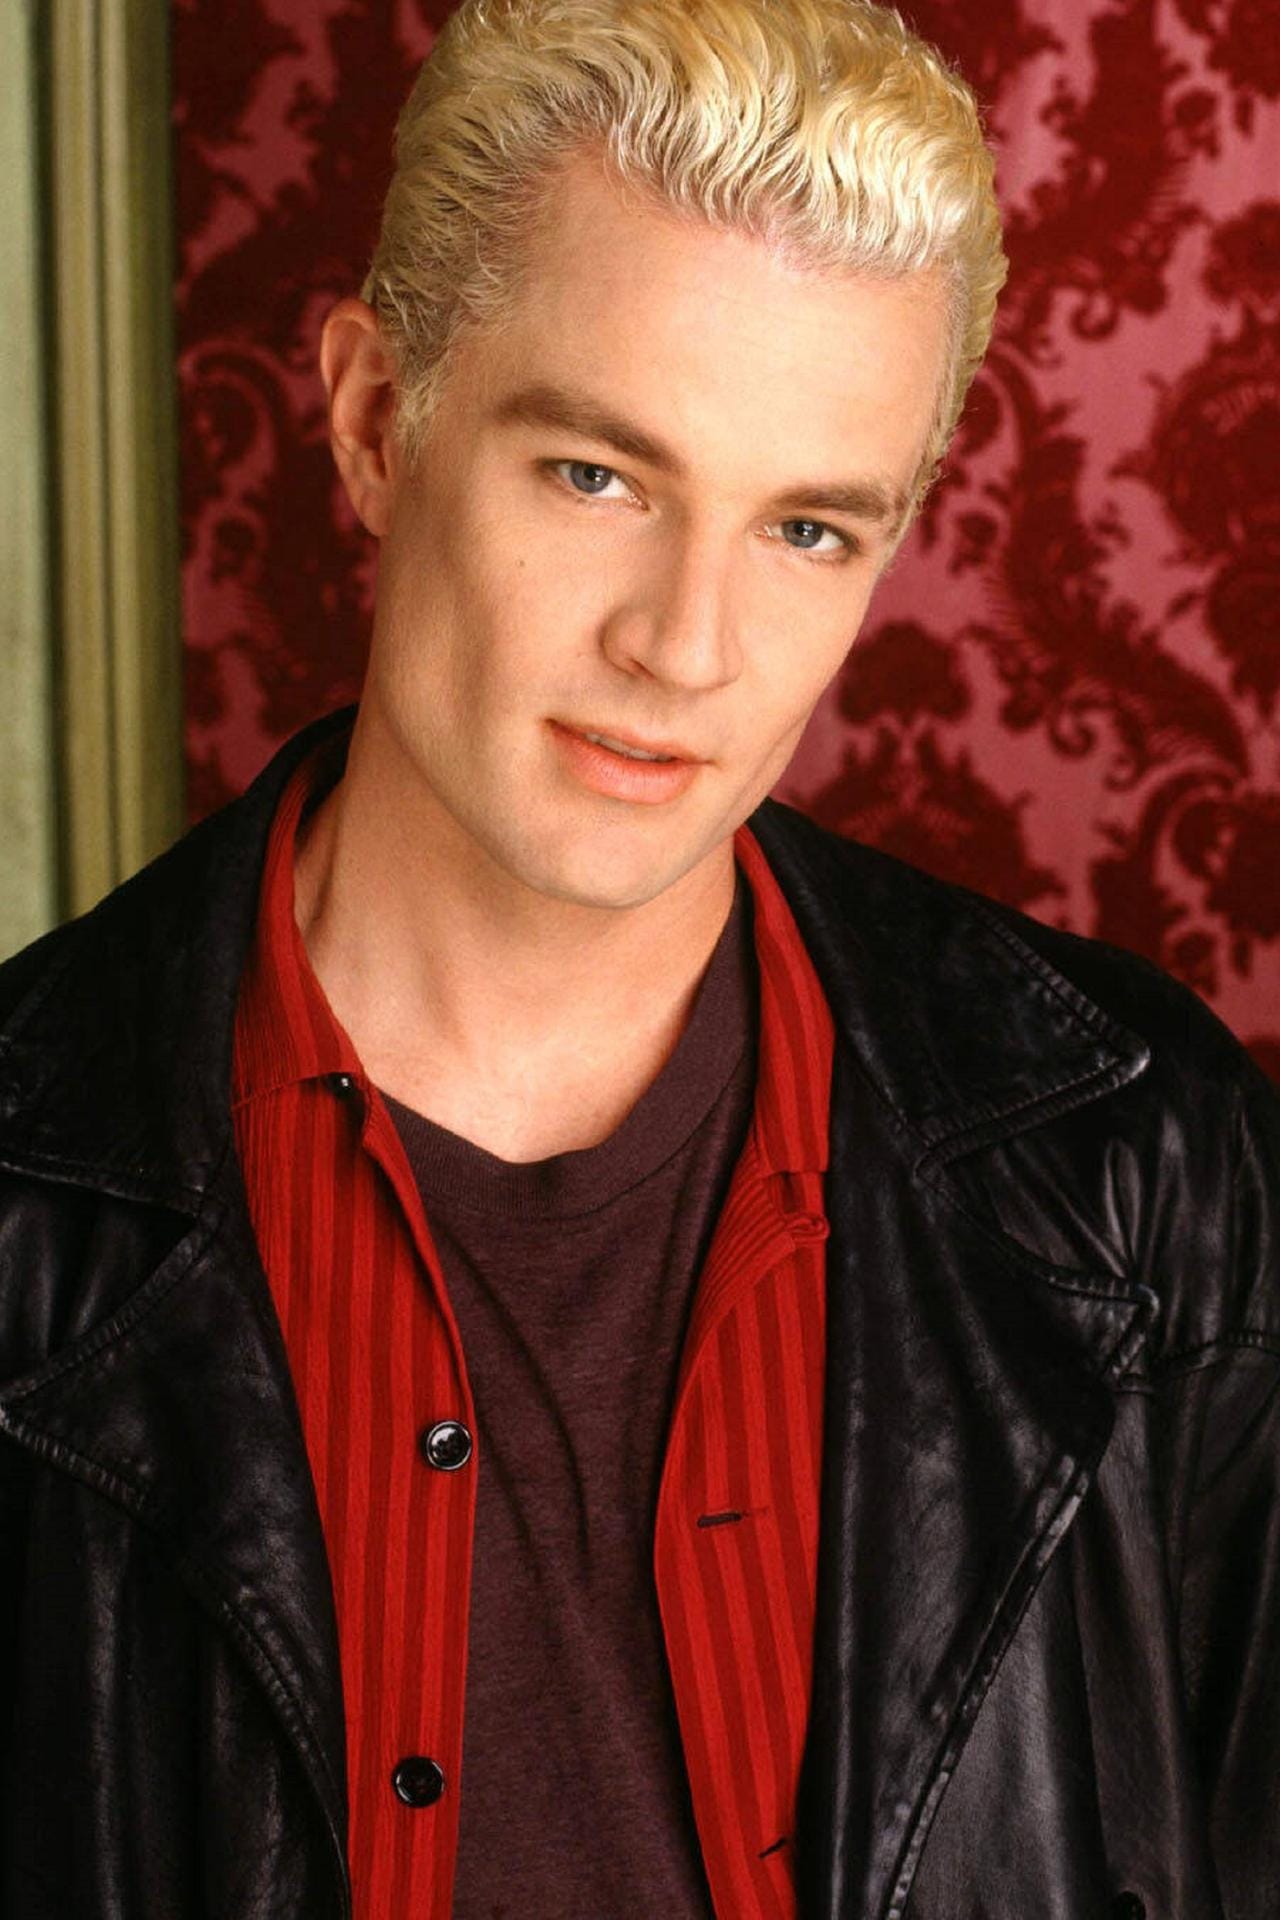 James Marsters übernahm in "Buffy" die Rolle des Vampirs Spike.